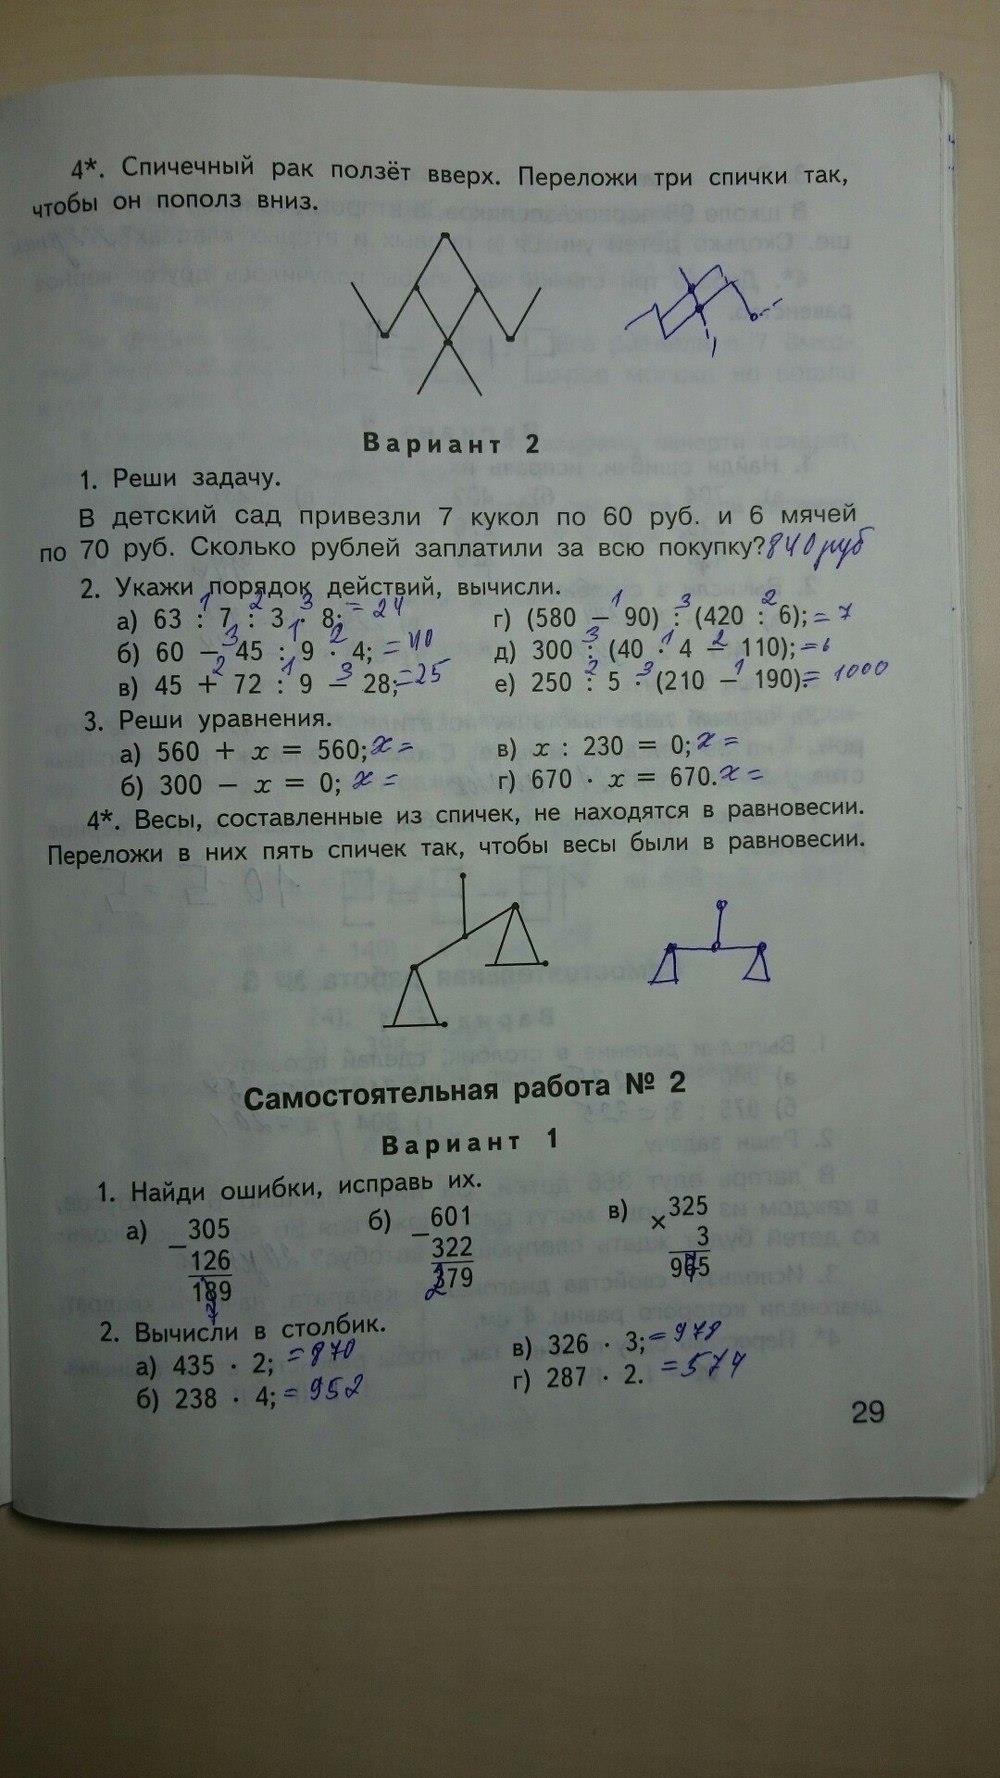 гдз 4 класс контрольно-измерительные материалы страница 29 математика Ситникова